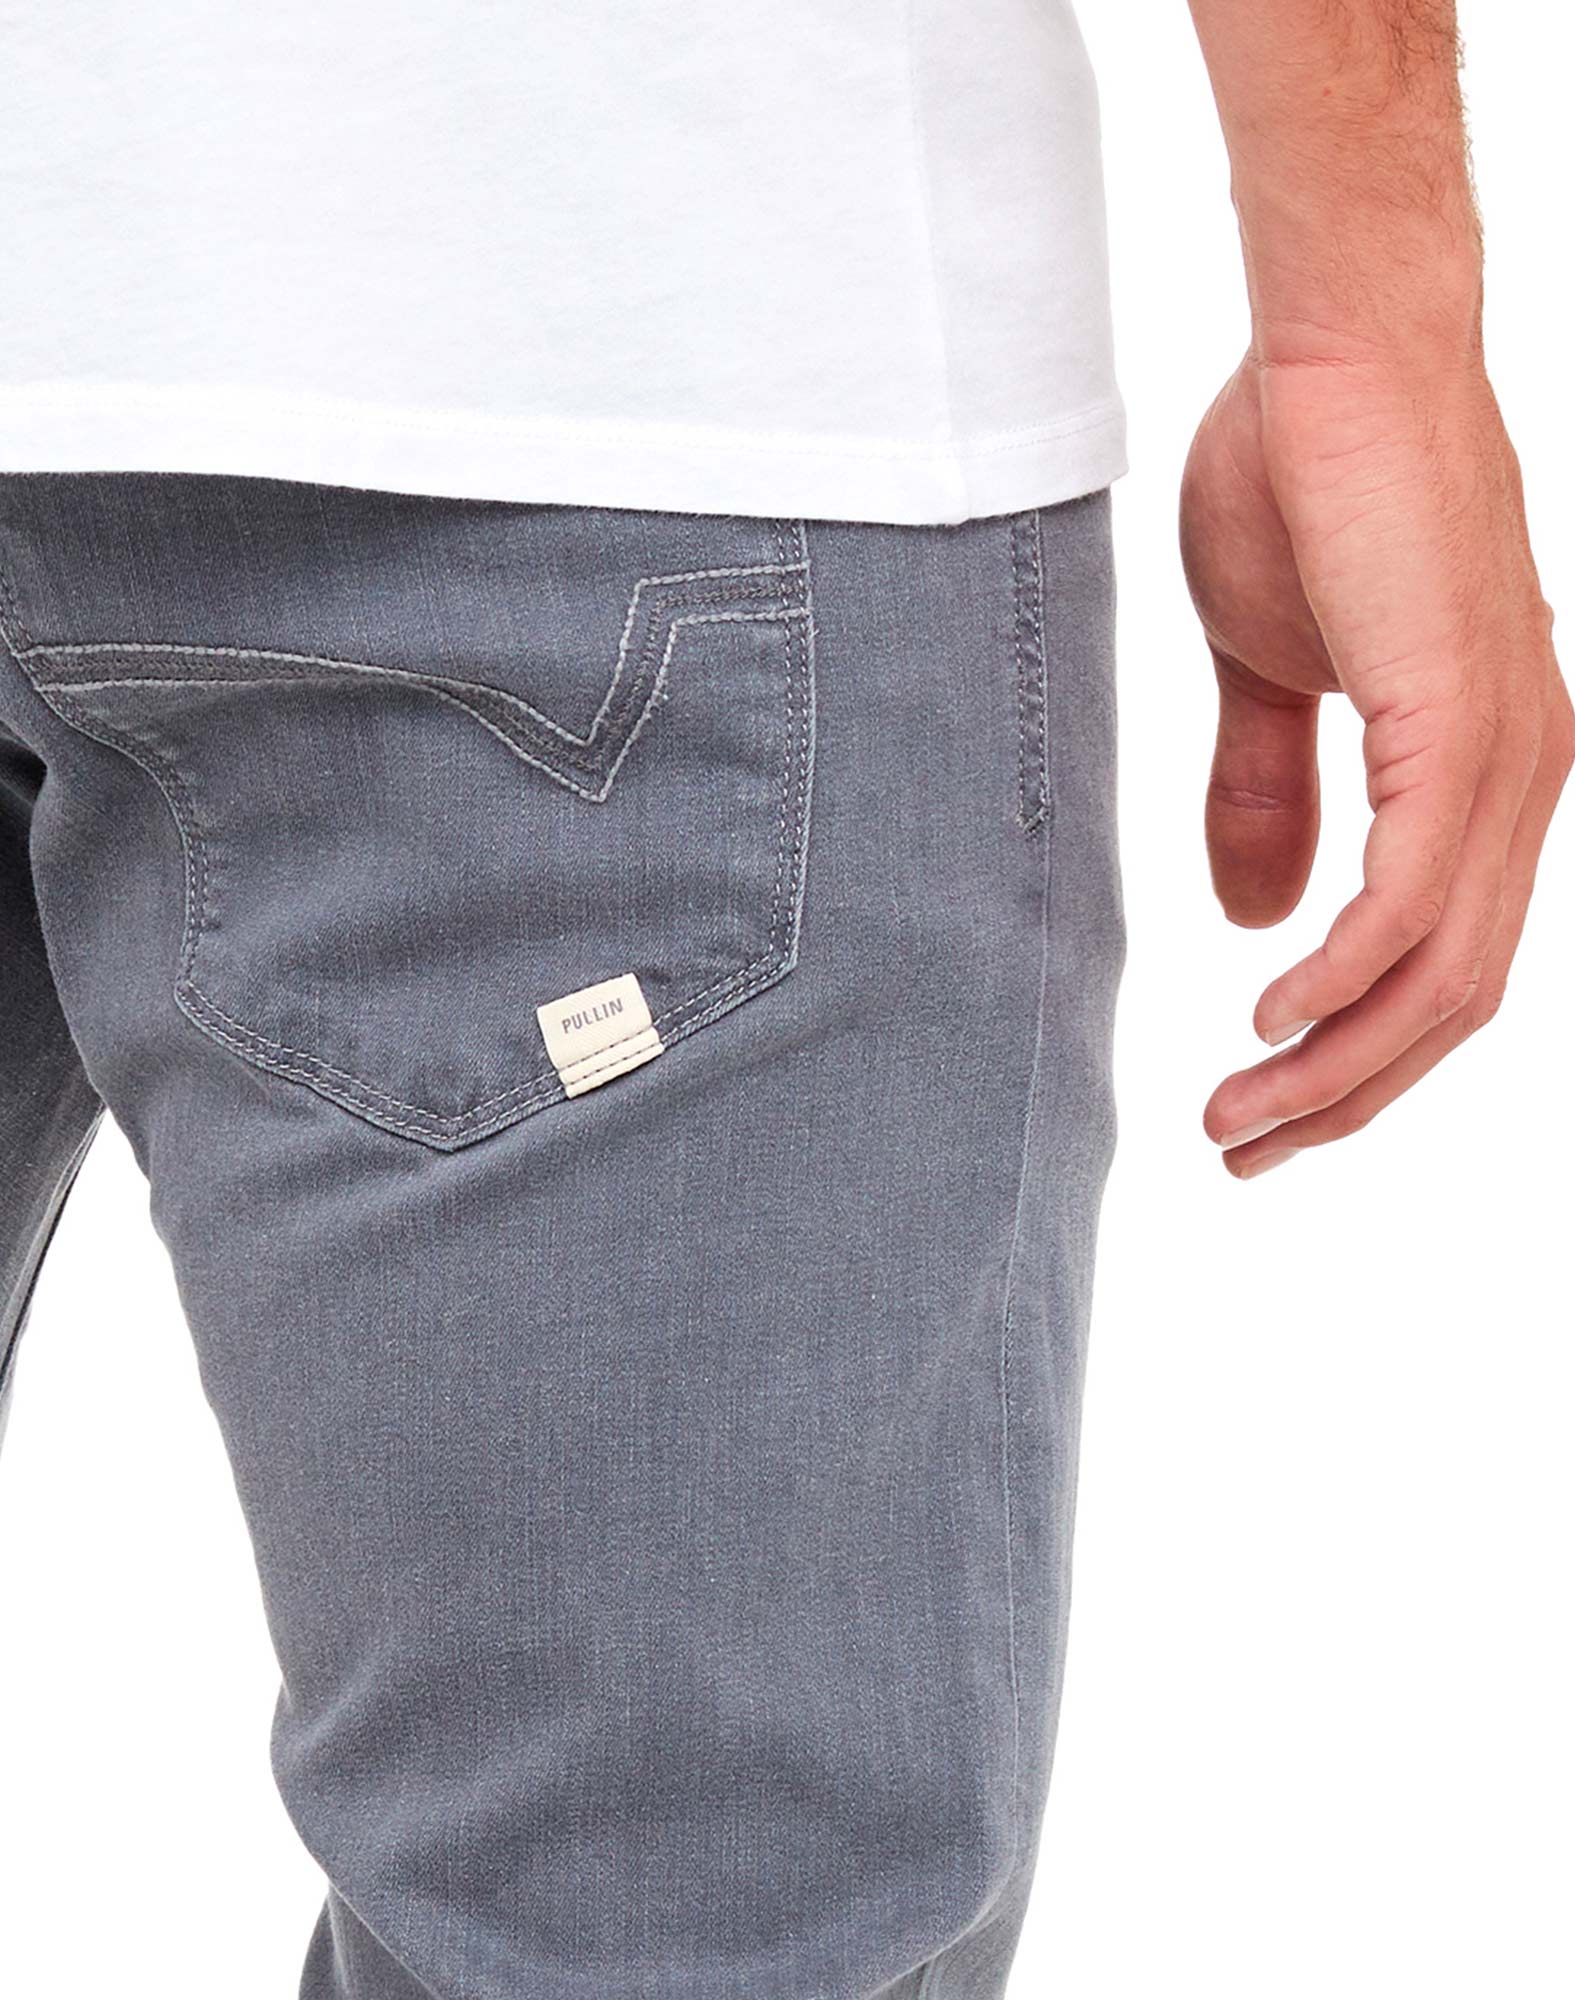 Men's pants DENING OFF CRAY